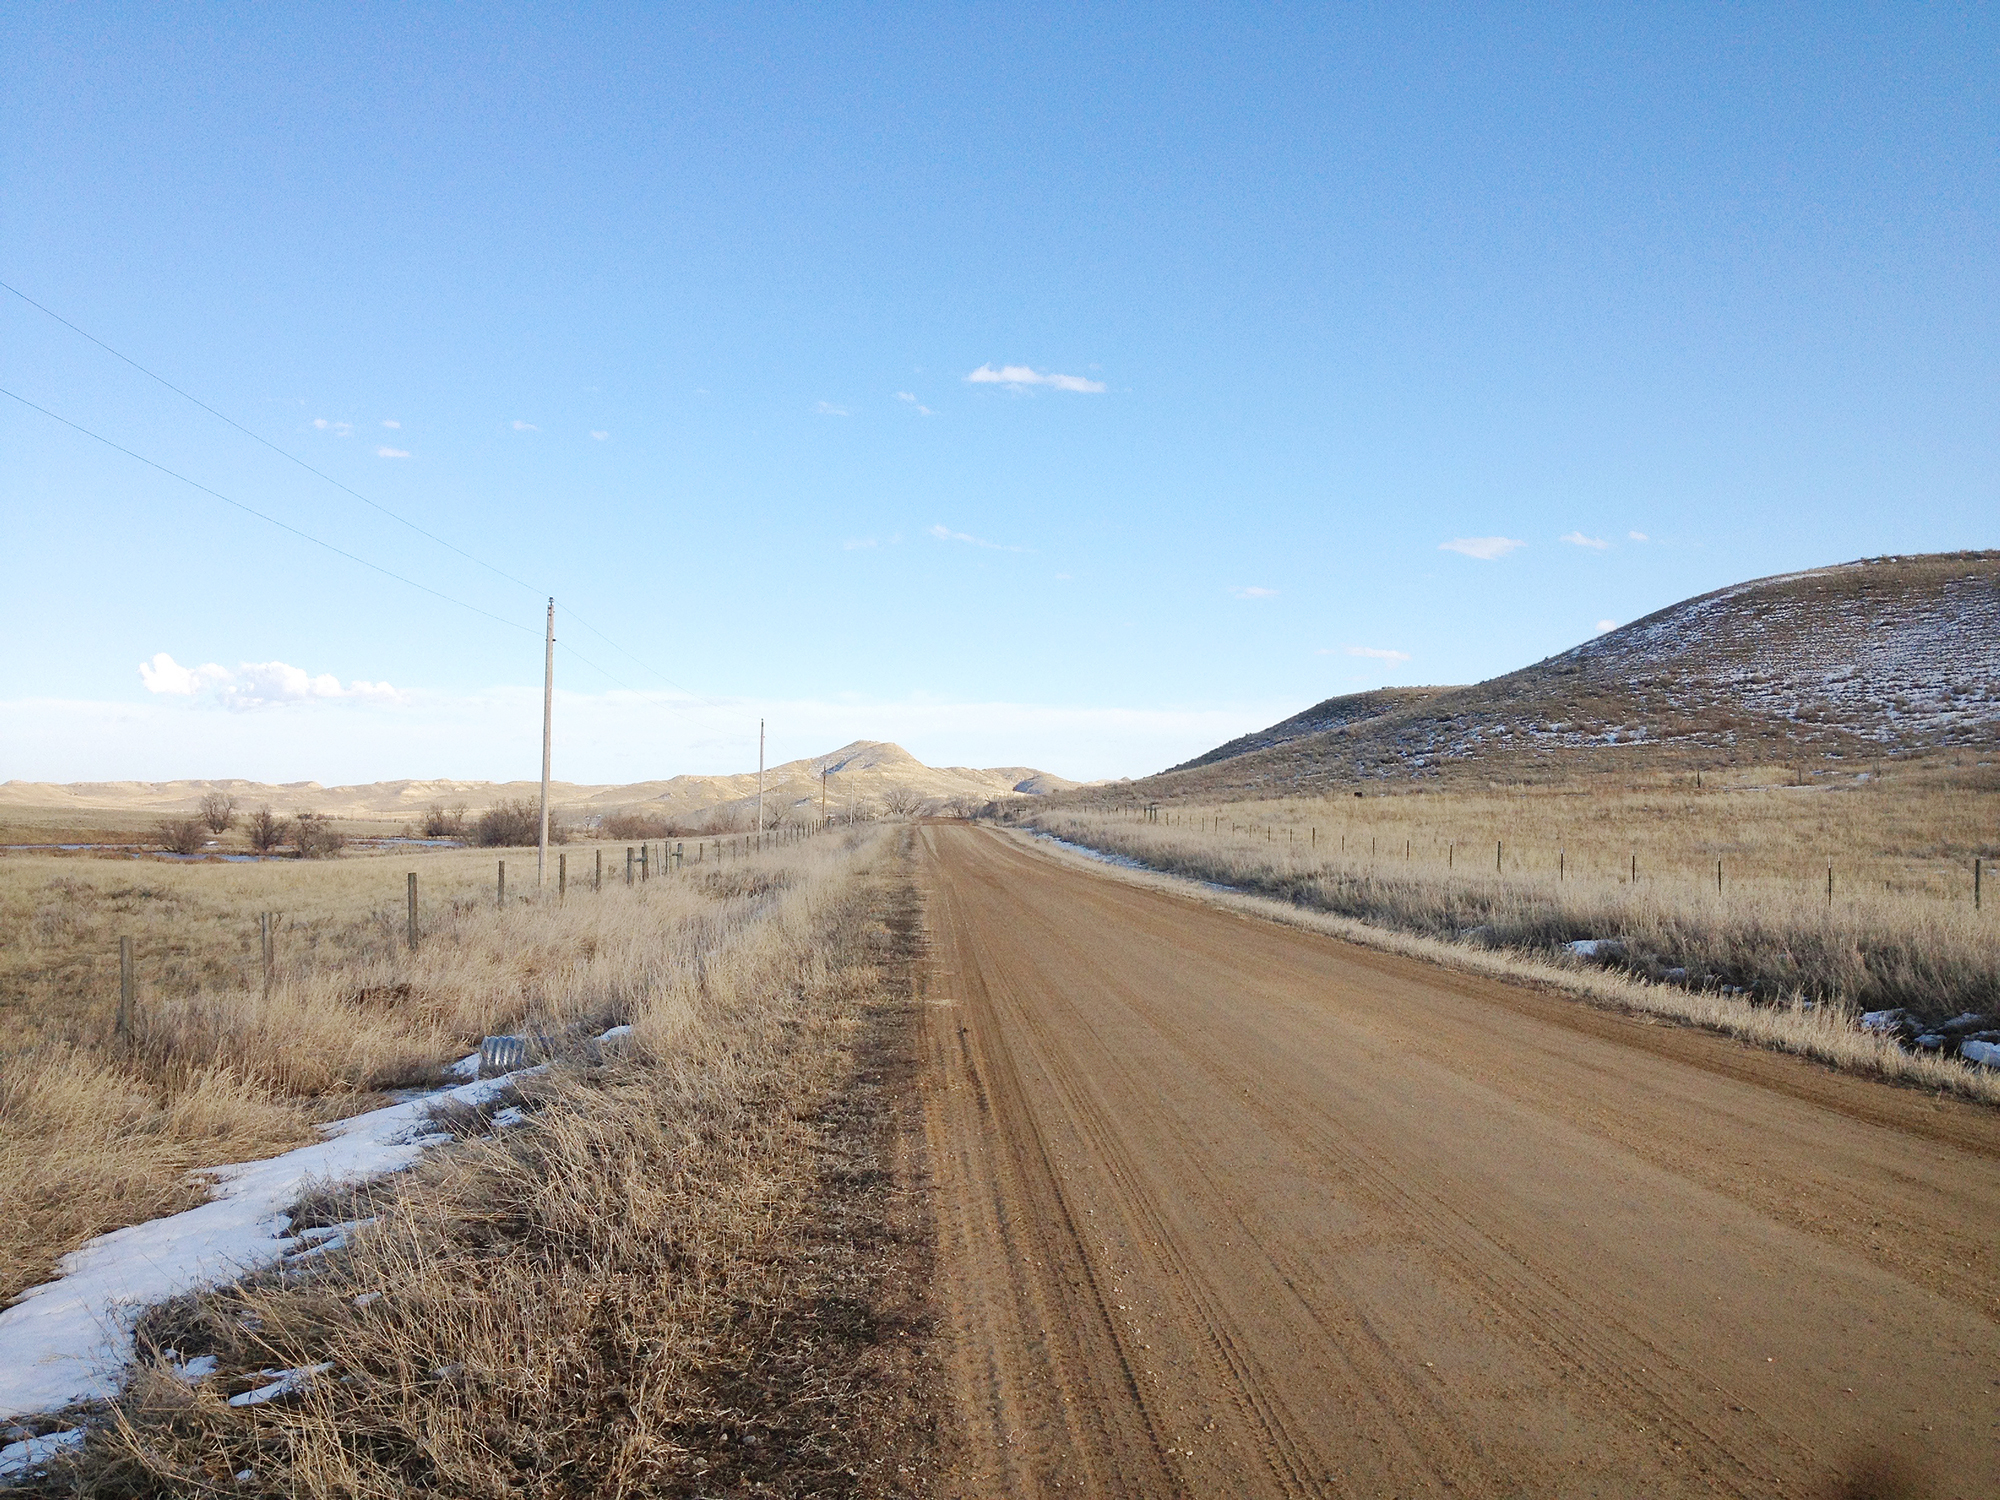 Die Straße Ulm - Ucross. Die Fotografie von Laurie Schwartz zeigt eine lange, braune Straße in Steppenlandschaft, Schneereste am Wegesrand. Keine Menschenseele ist zu sehen: Der Weg in die Geisterstadt Ulm, Wyoming